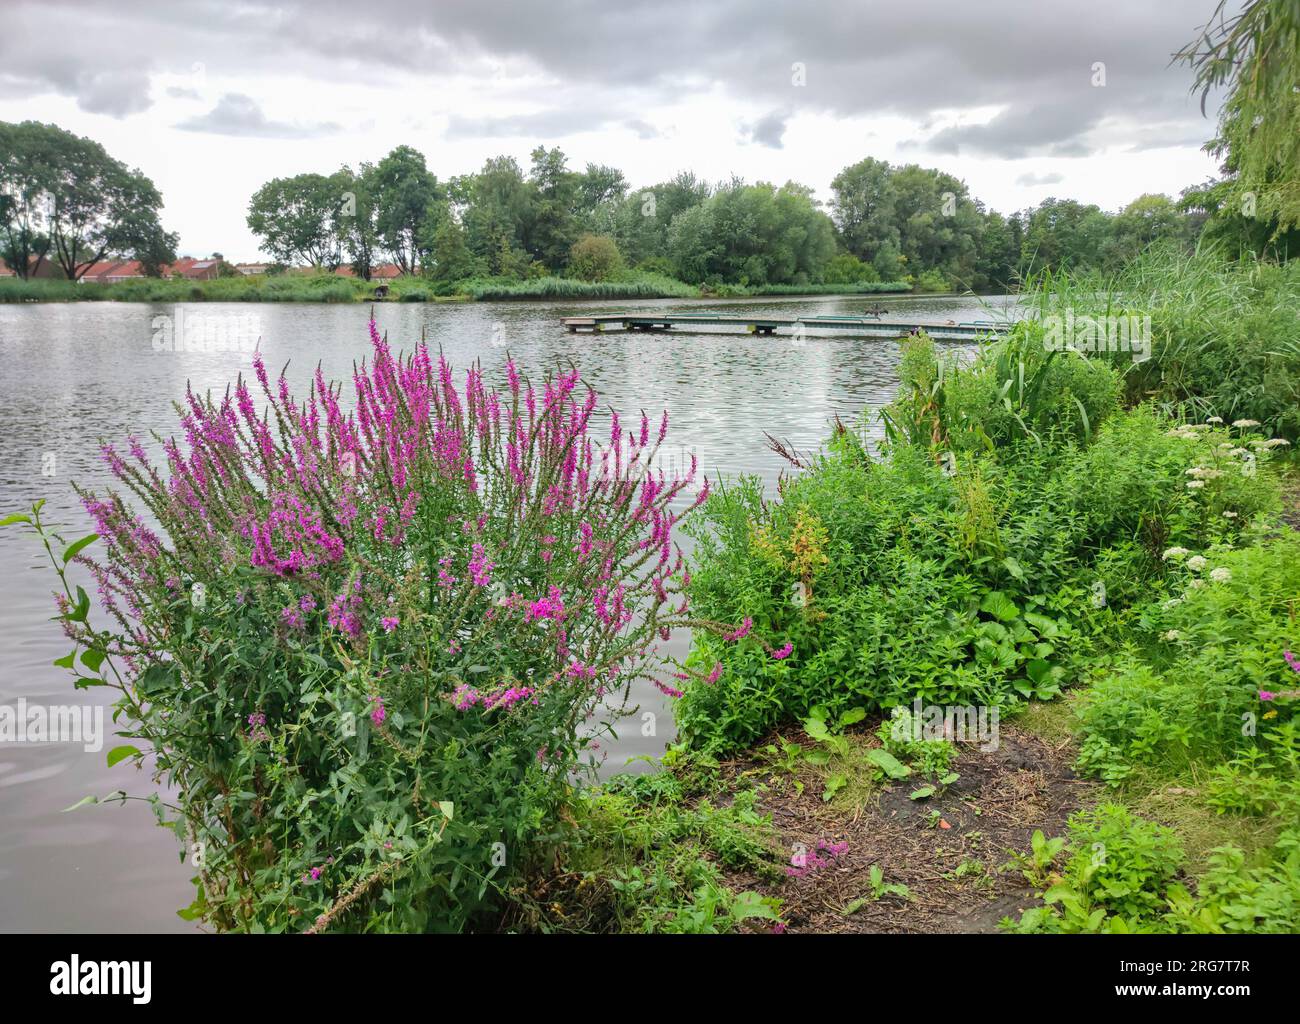 Vue panoramique sur les fleurs sauvages violettes et le lac 'Petteplass' dans la ville de Waddinxveen, pays-Bas Banque D'Images